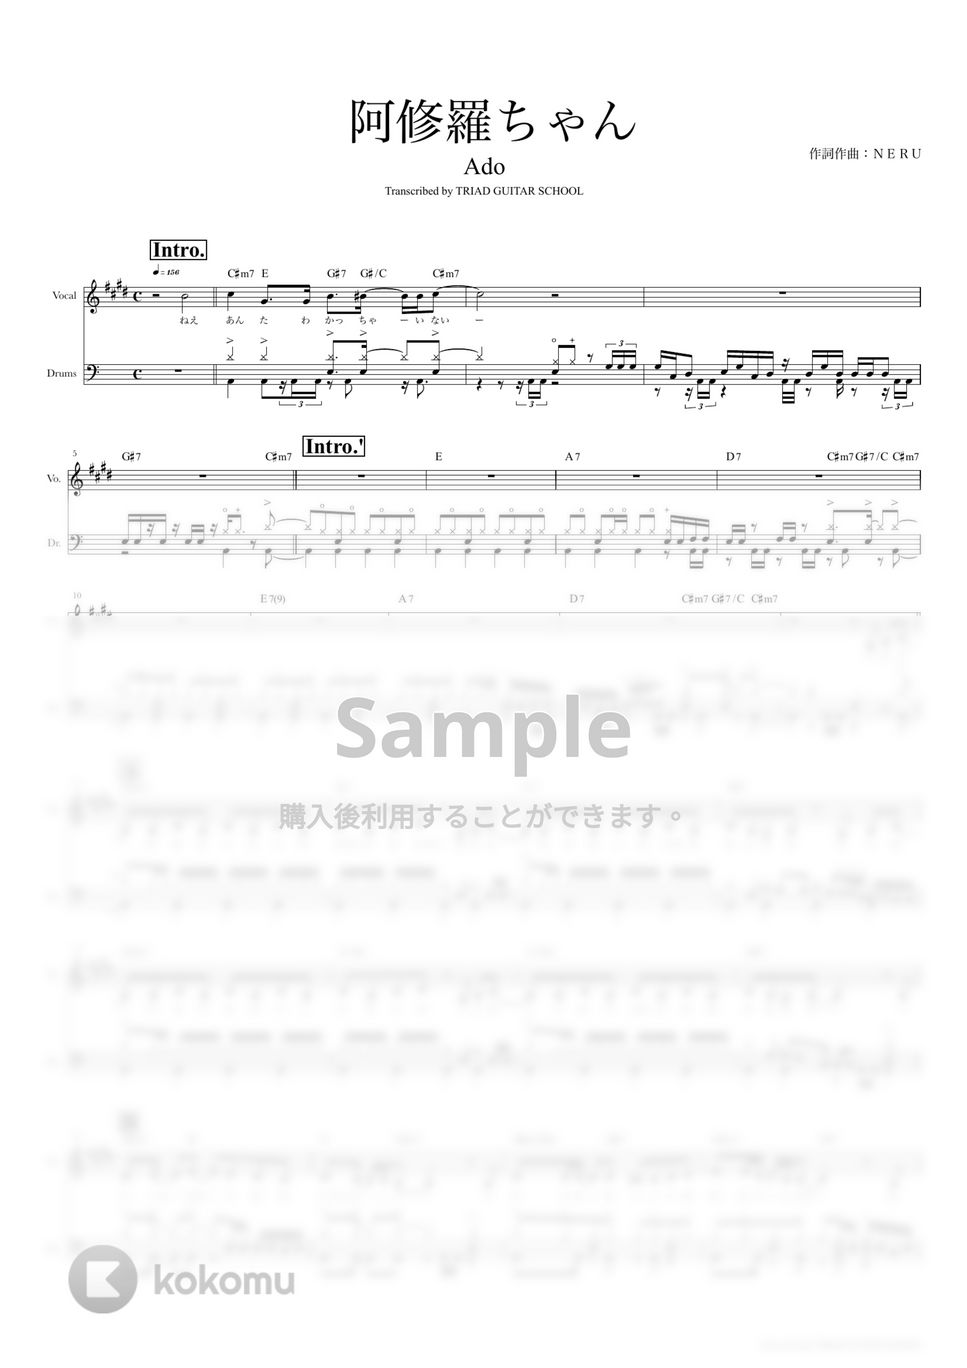 Ado - 阿修羅ちゃん (ドラムスコア・歌詞・コード付き) by TRIAD GUITAR SCHOOL